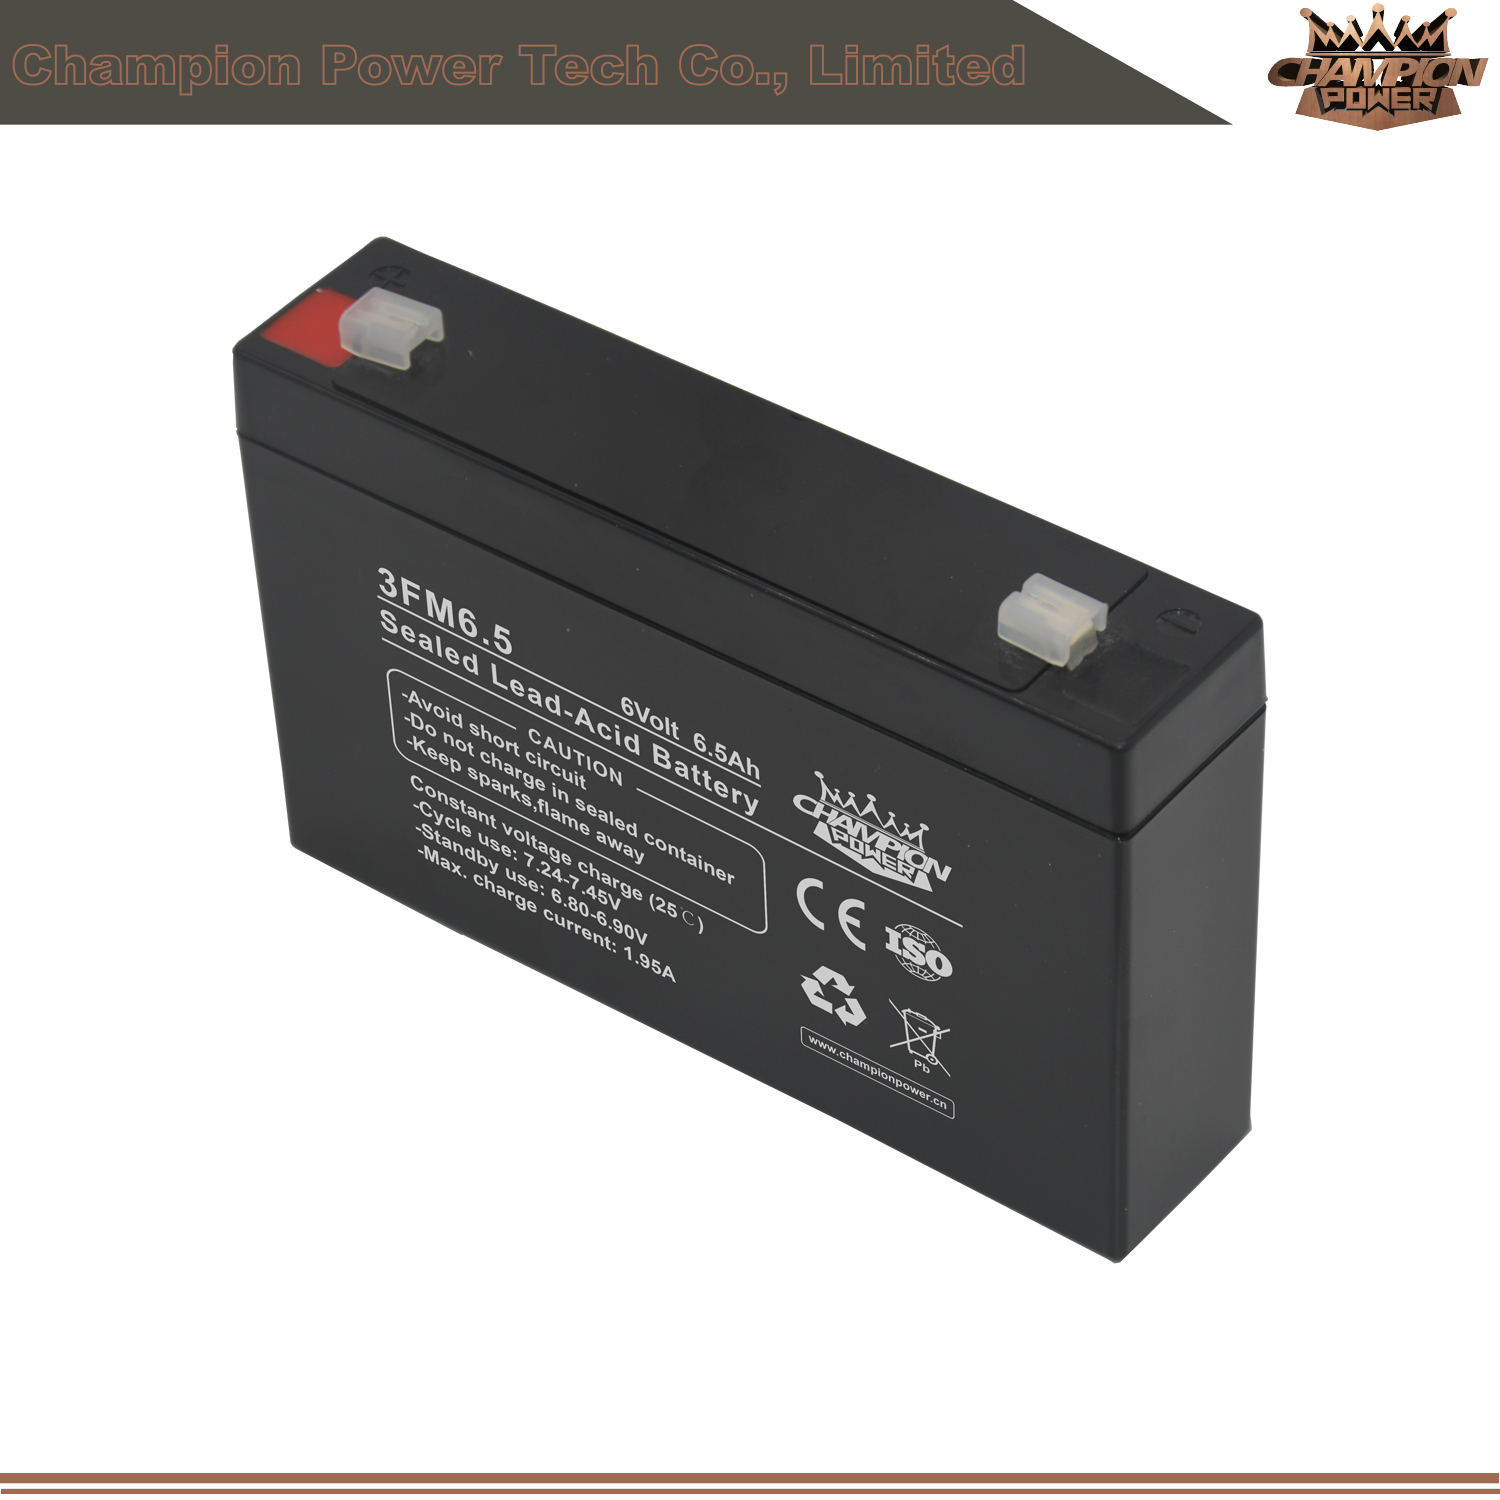 3FM6.5 6V6.5Ah AGM Battery